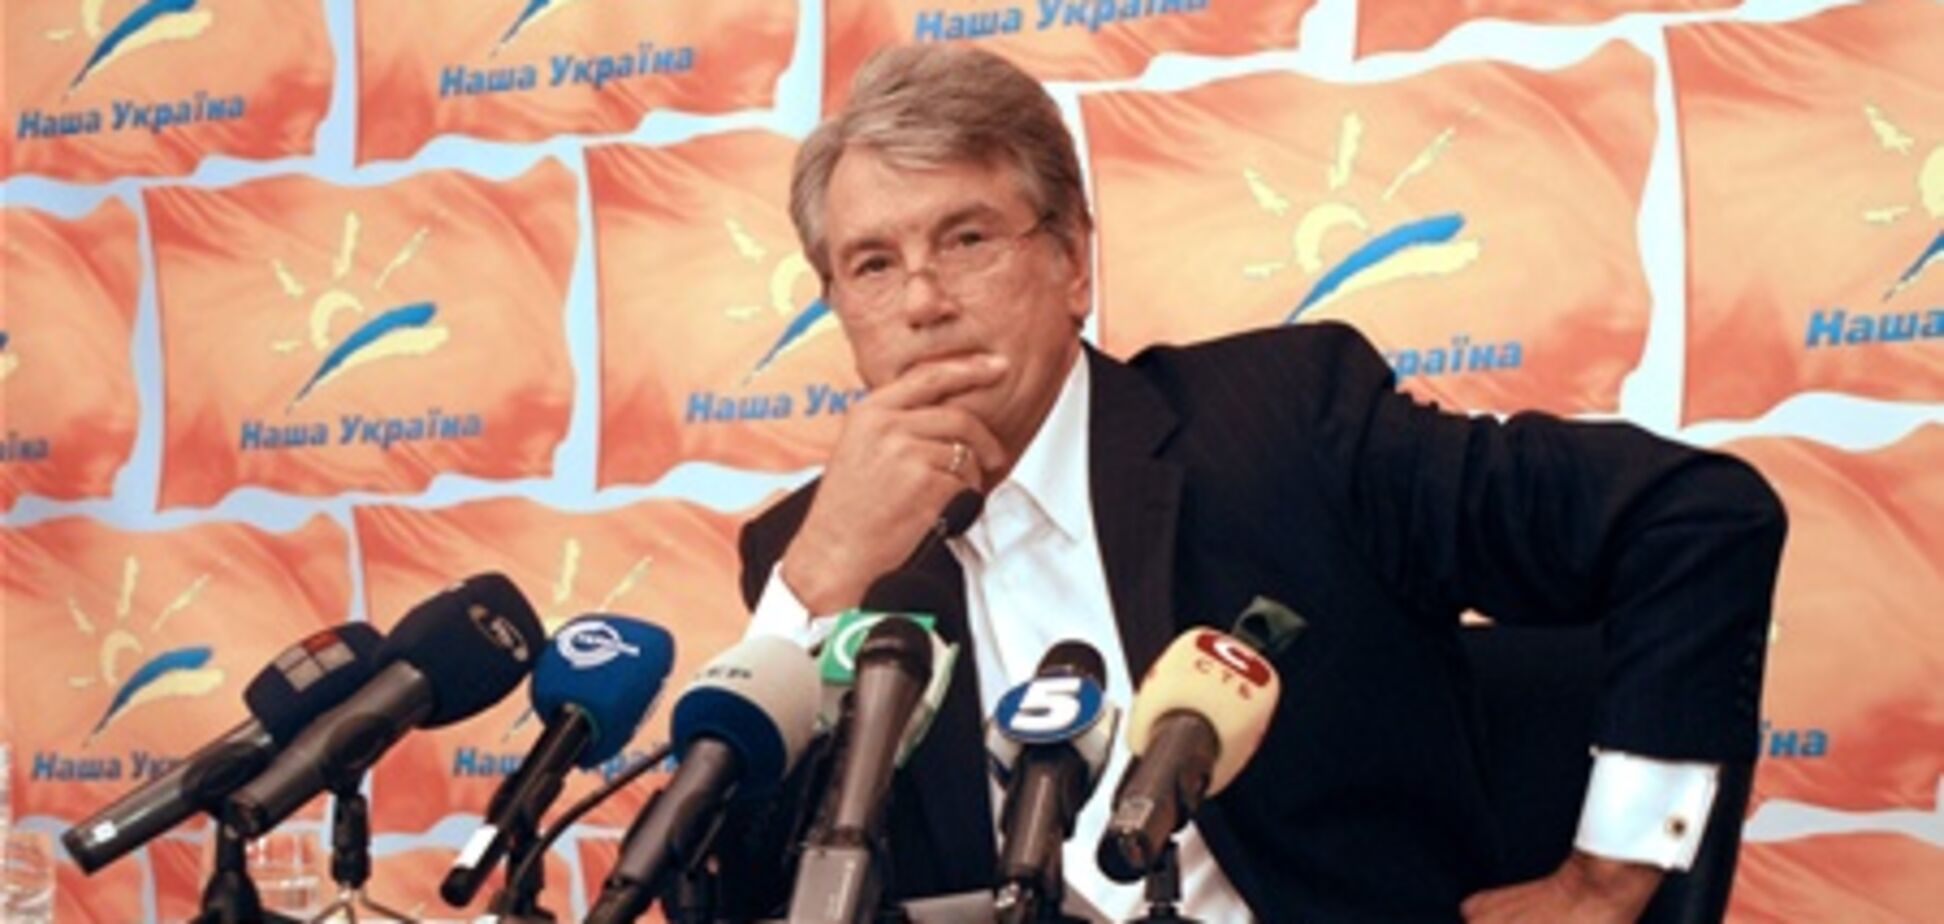 Ющенко рассекретил миссию 'Нашей Украины'